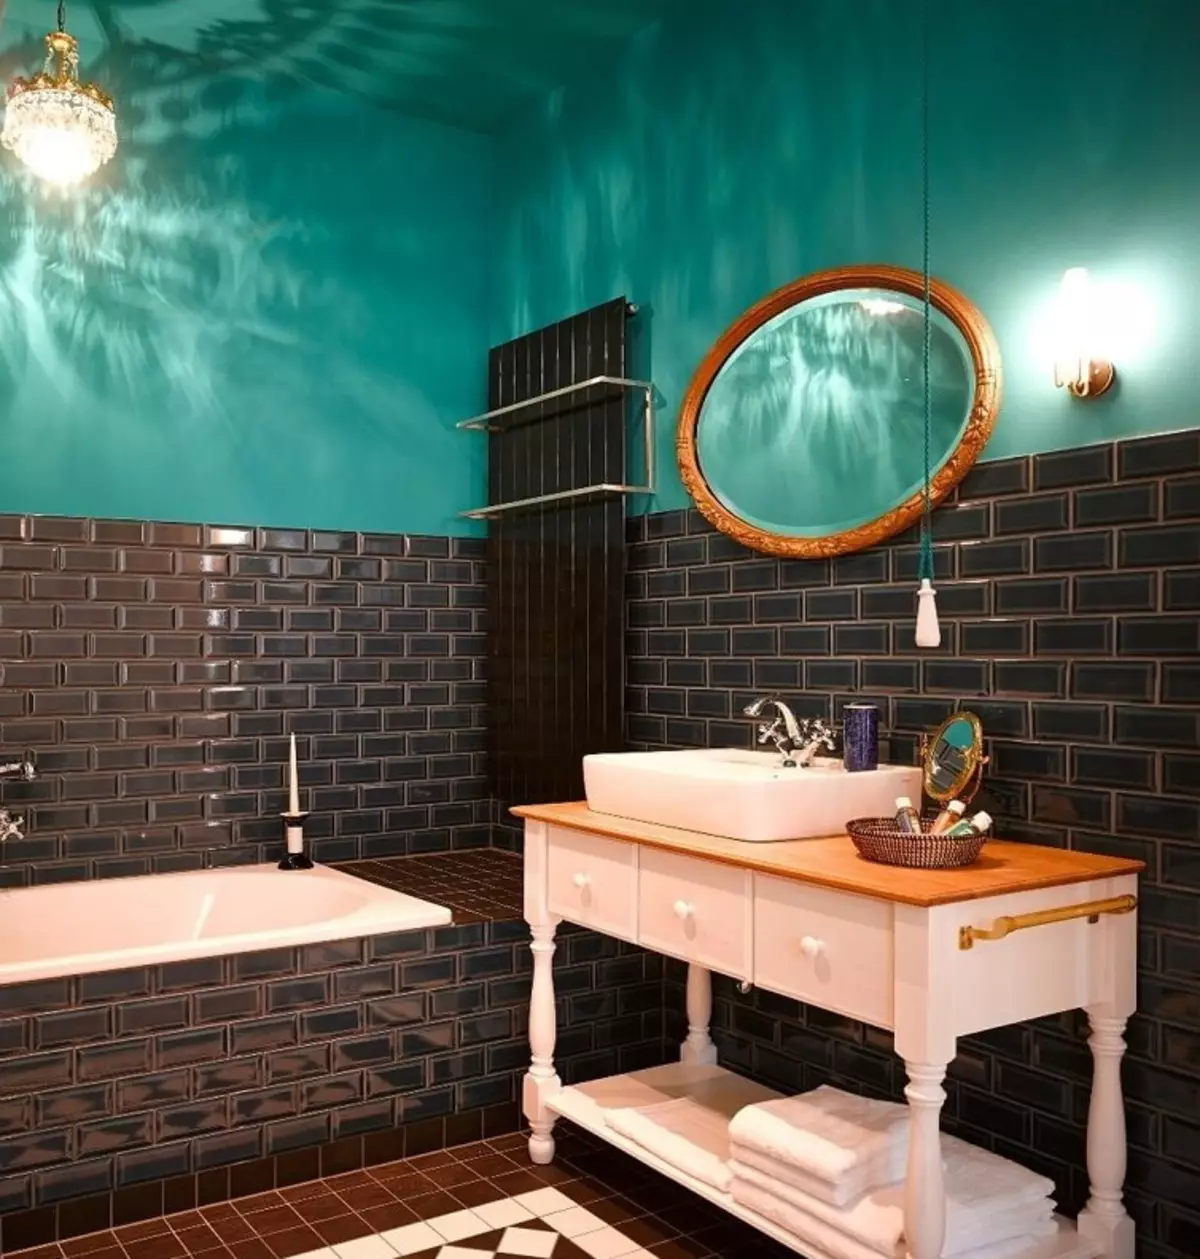 Baño turquesa (61 fotos): Ejemplos de diseño de baño en este color. Entendemos en colores, creamos un hermoso interior. 10203_36